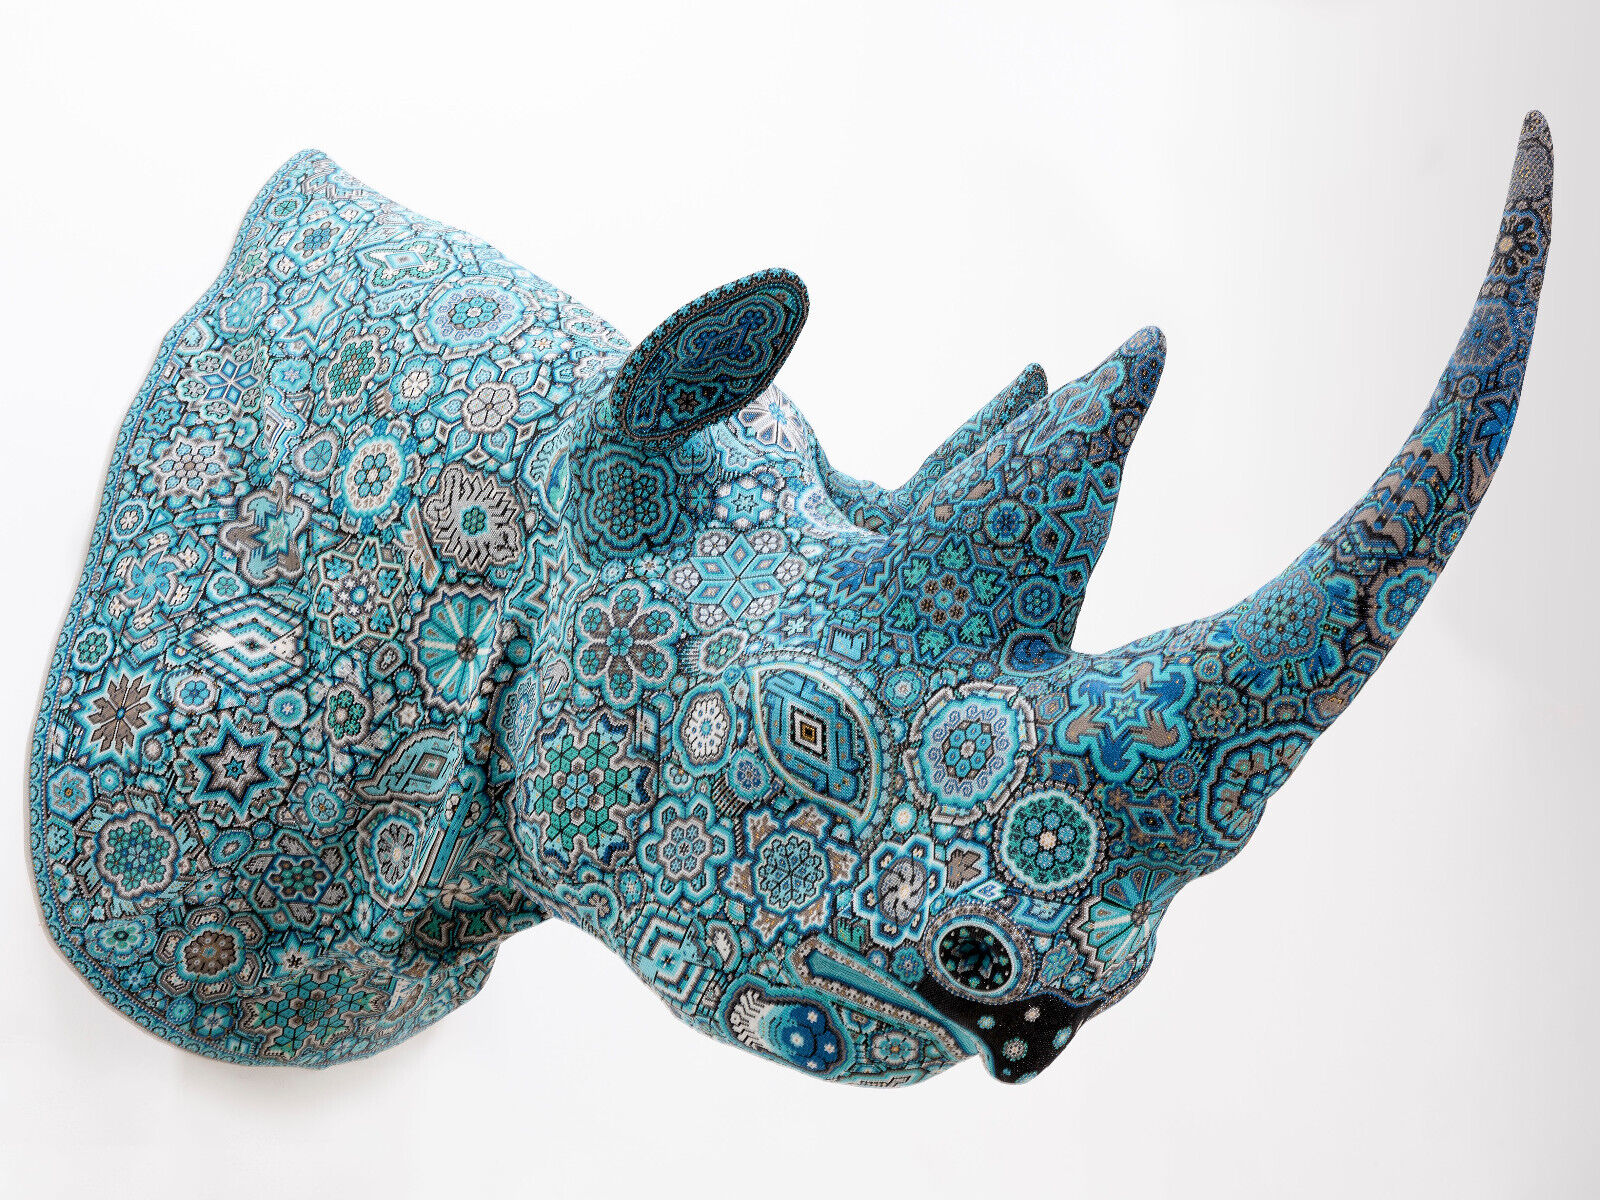 Huichol Art Sculpture Rhinoceros Head Hikuri 4.5 ft. | Beads on epoxy artwork